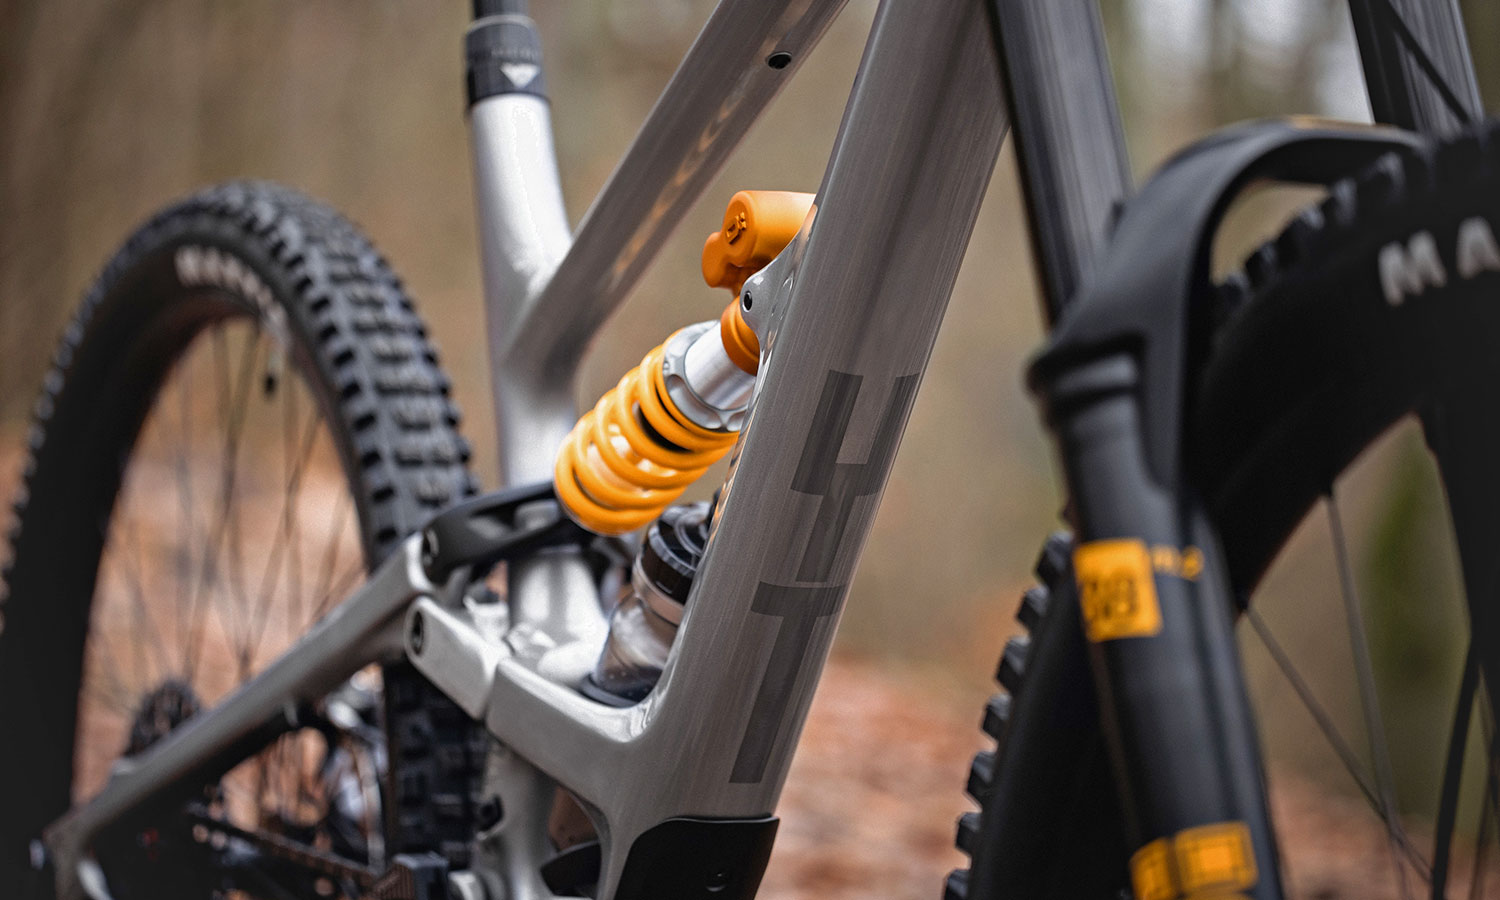 YT Capra Core 5 race-ready carbon enduro bike build, Öhlins suspension